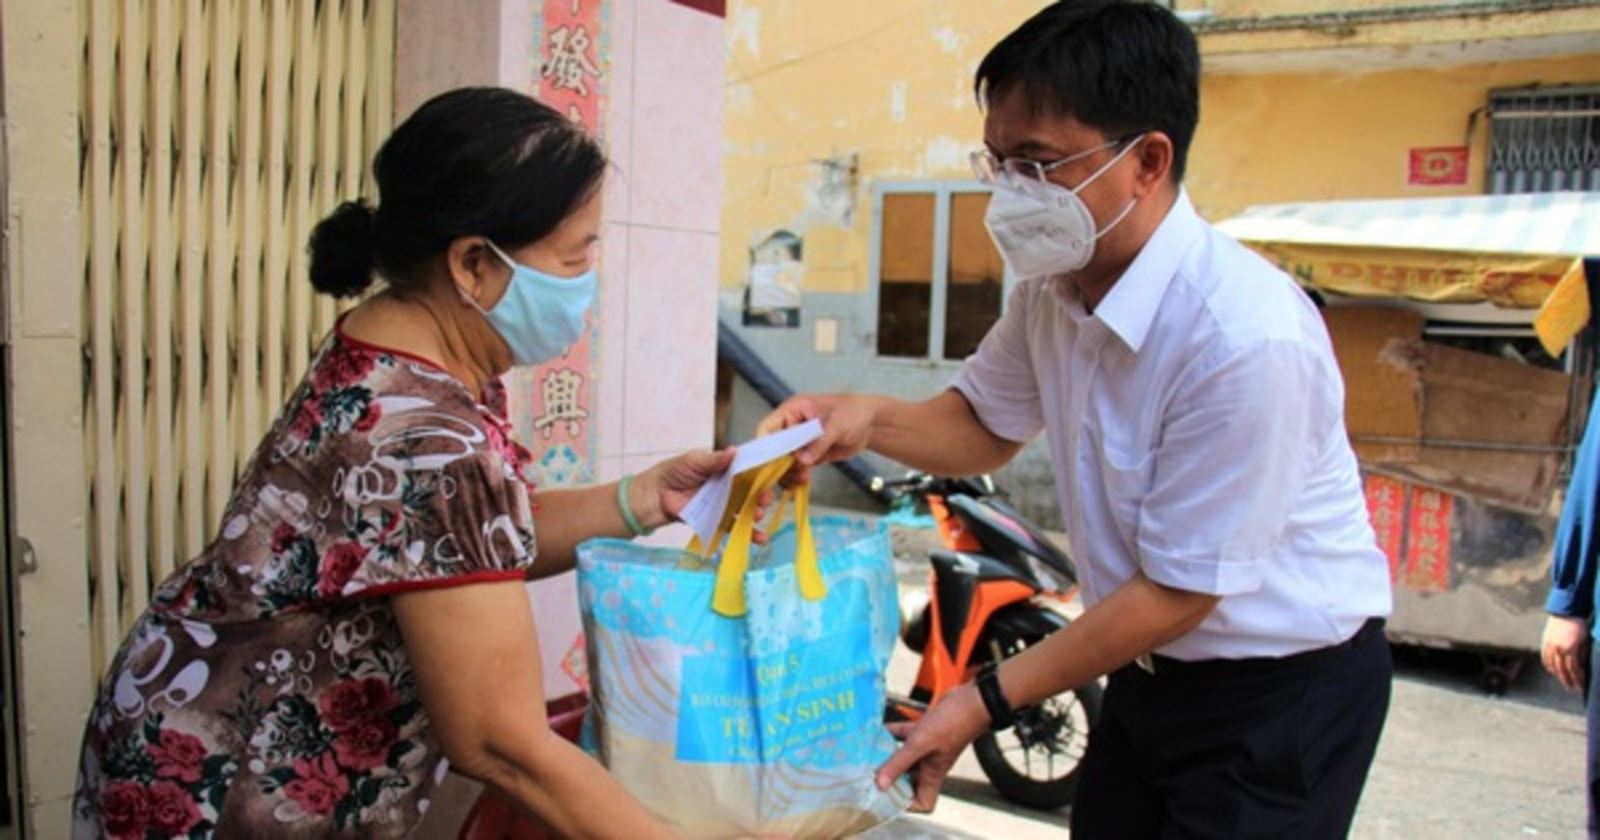 Mise à jour hebdomadaire de la pandémie au Vietnam  Semaine 2 septembre 2021